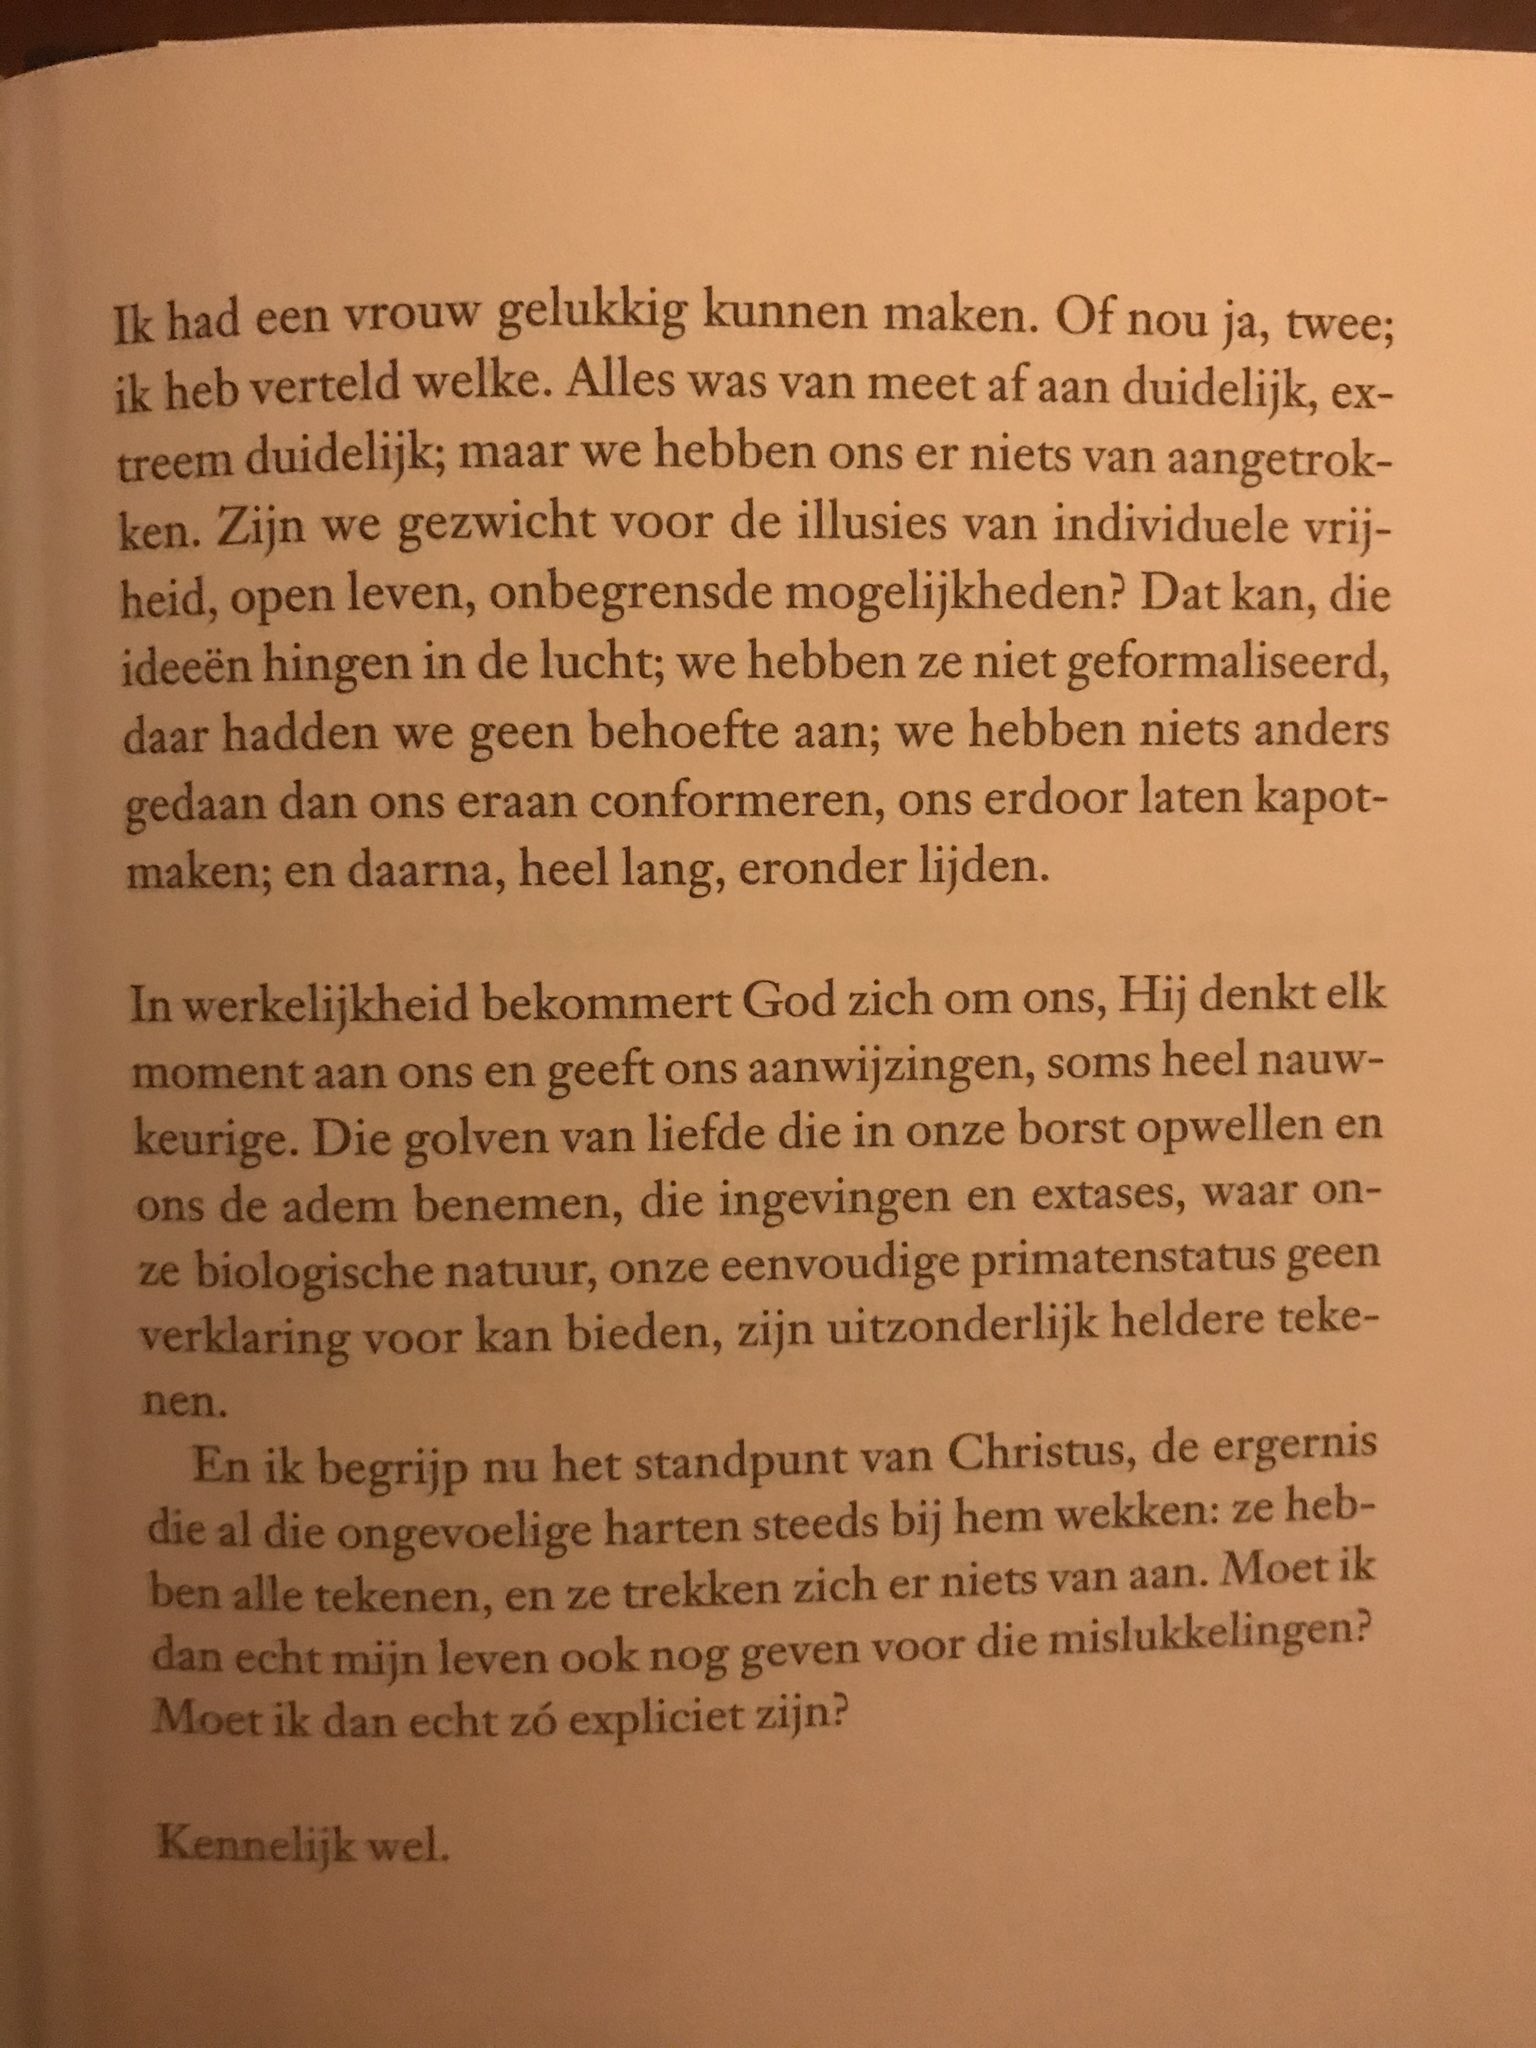 Menno de Bruyne on bladzijde van het boek 'Serotonine' van Michel Houellebecq. https://t.co/iMHLgngvfC" Twitter